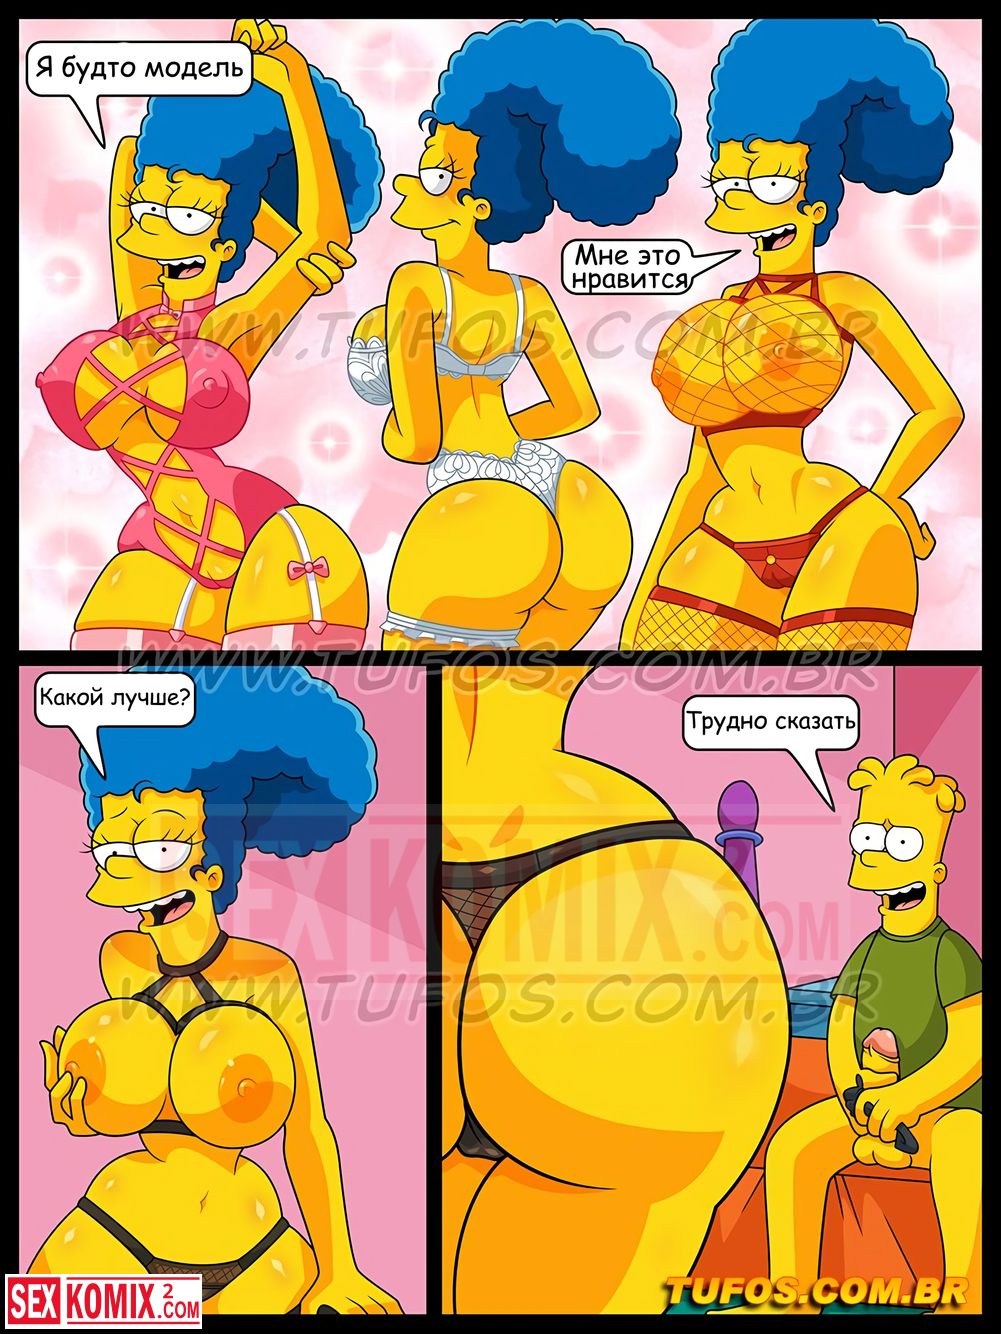 Симпсоны порно комиксы конкурс фото 28